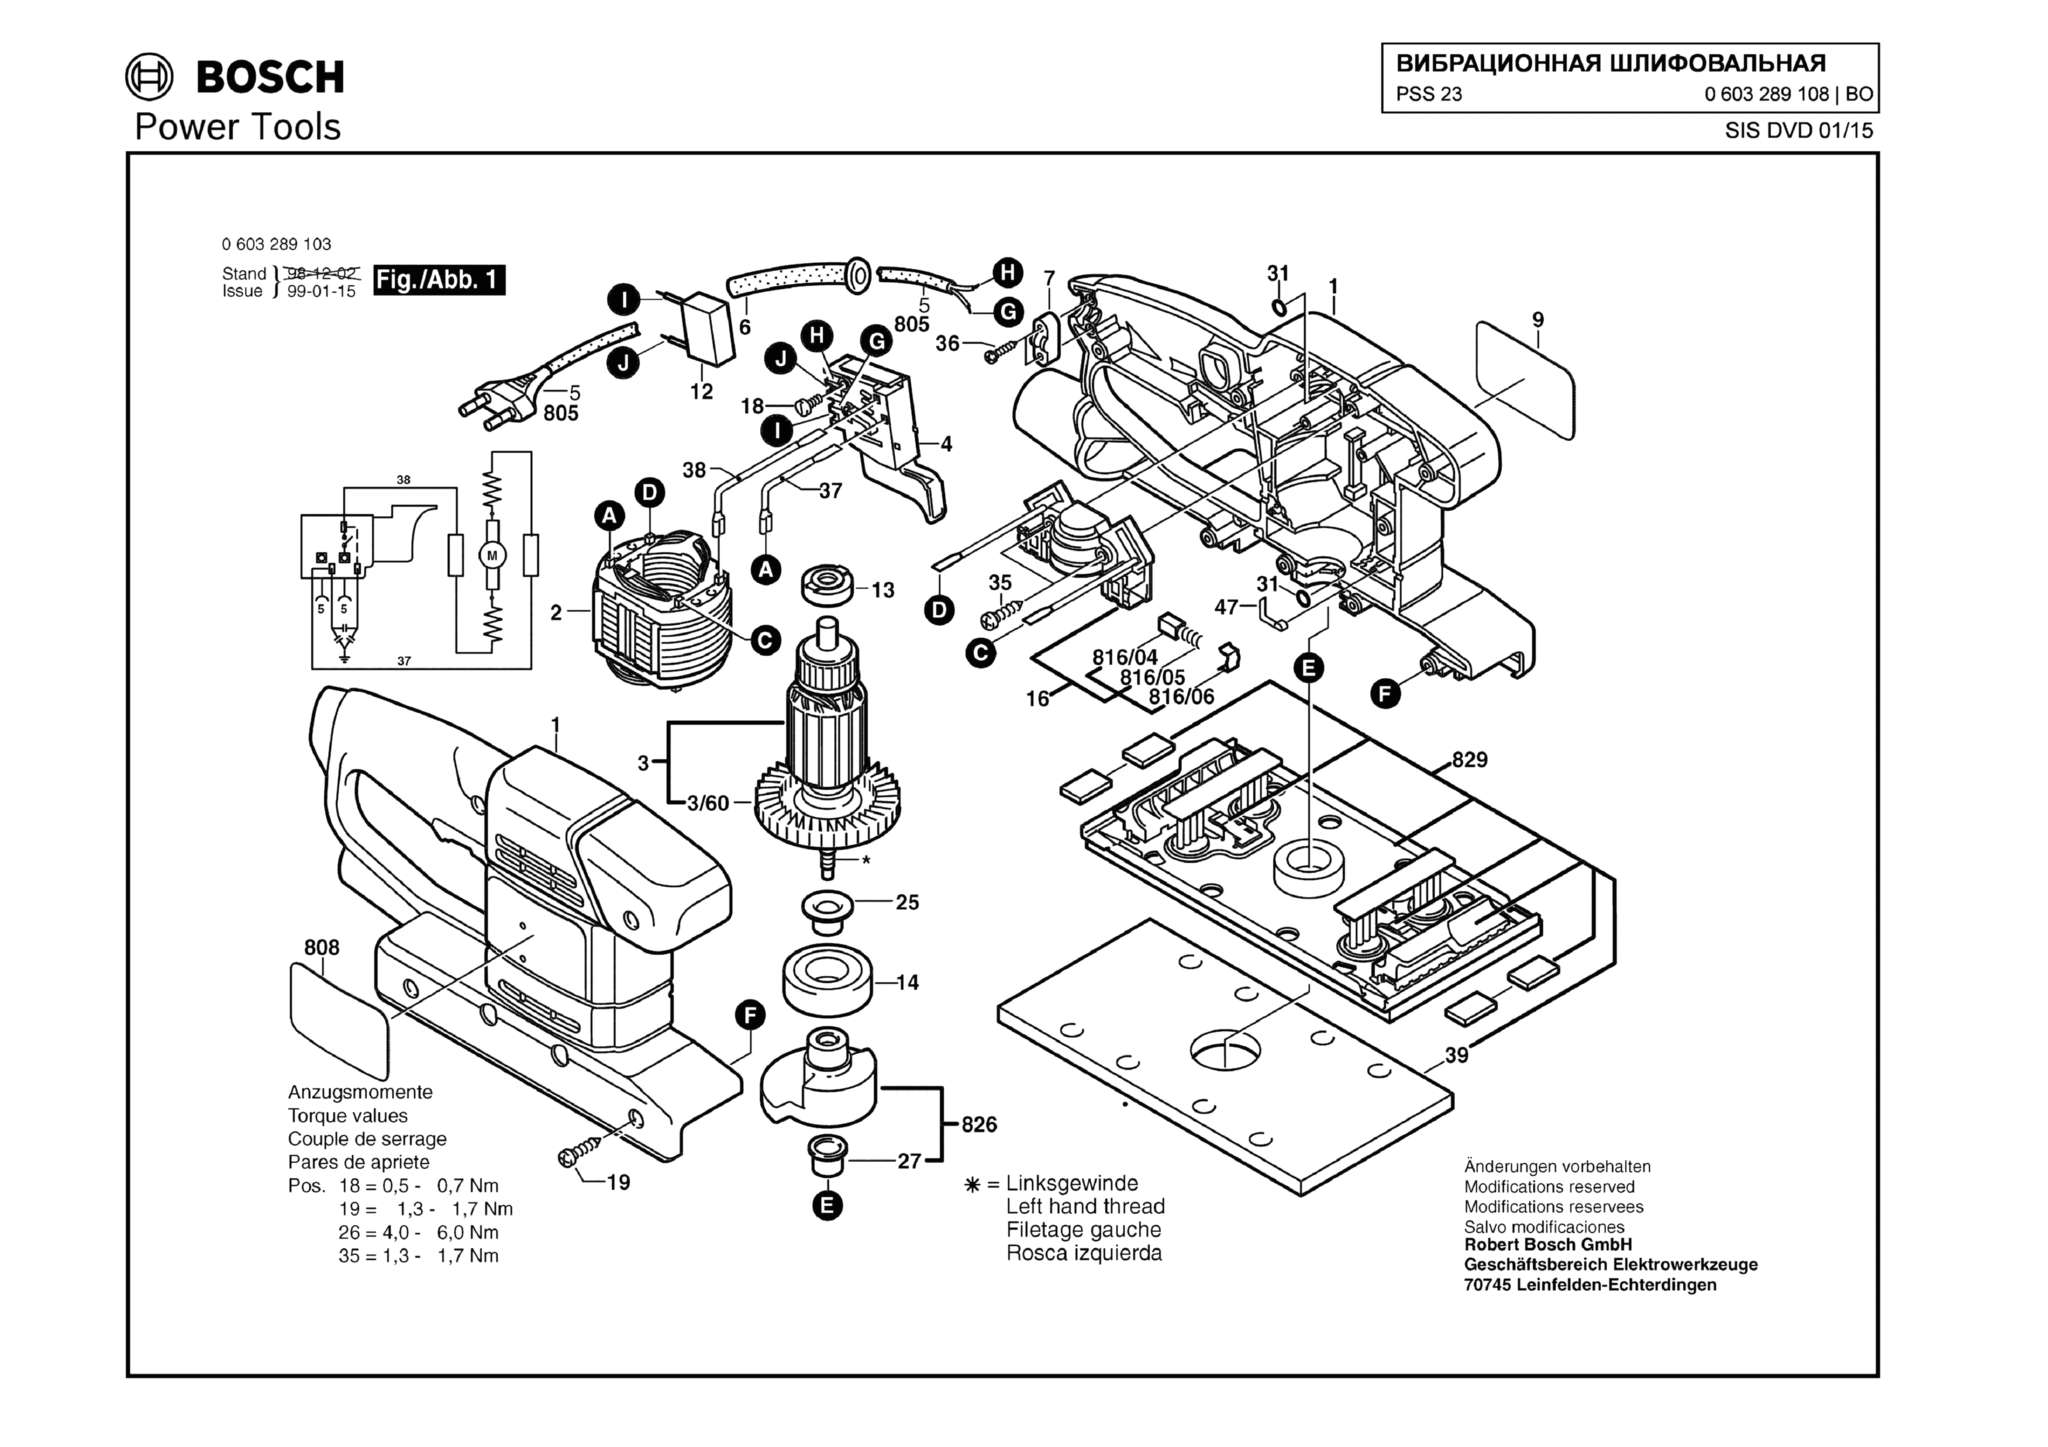 Запчасти, схема и деталировка Bosch PSS 23 (ТИП 0603289108)